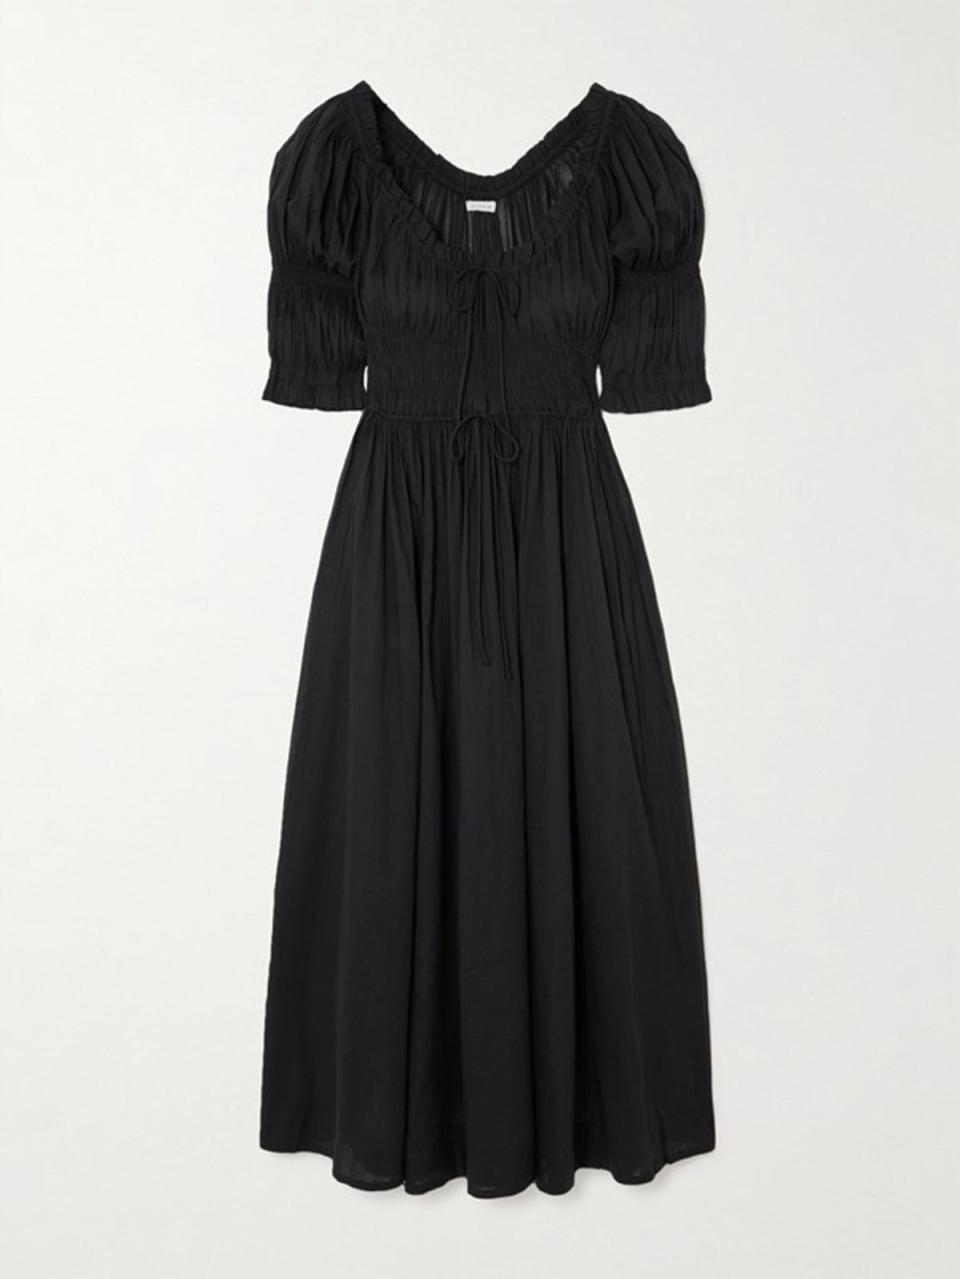 Ischia dress in black, £325, DÔEN, net-a-porter.com (DÔEN)